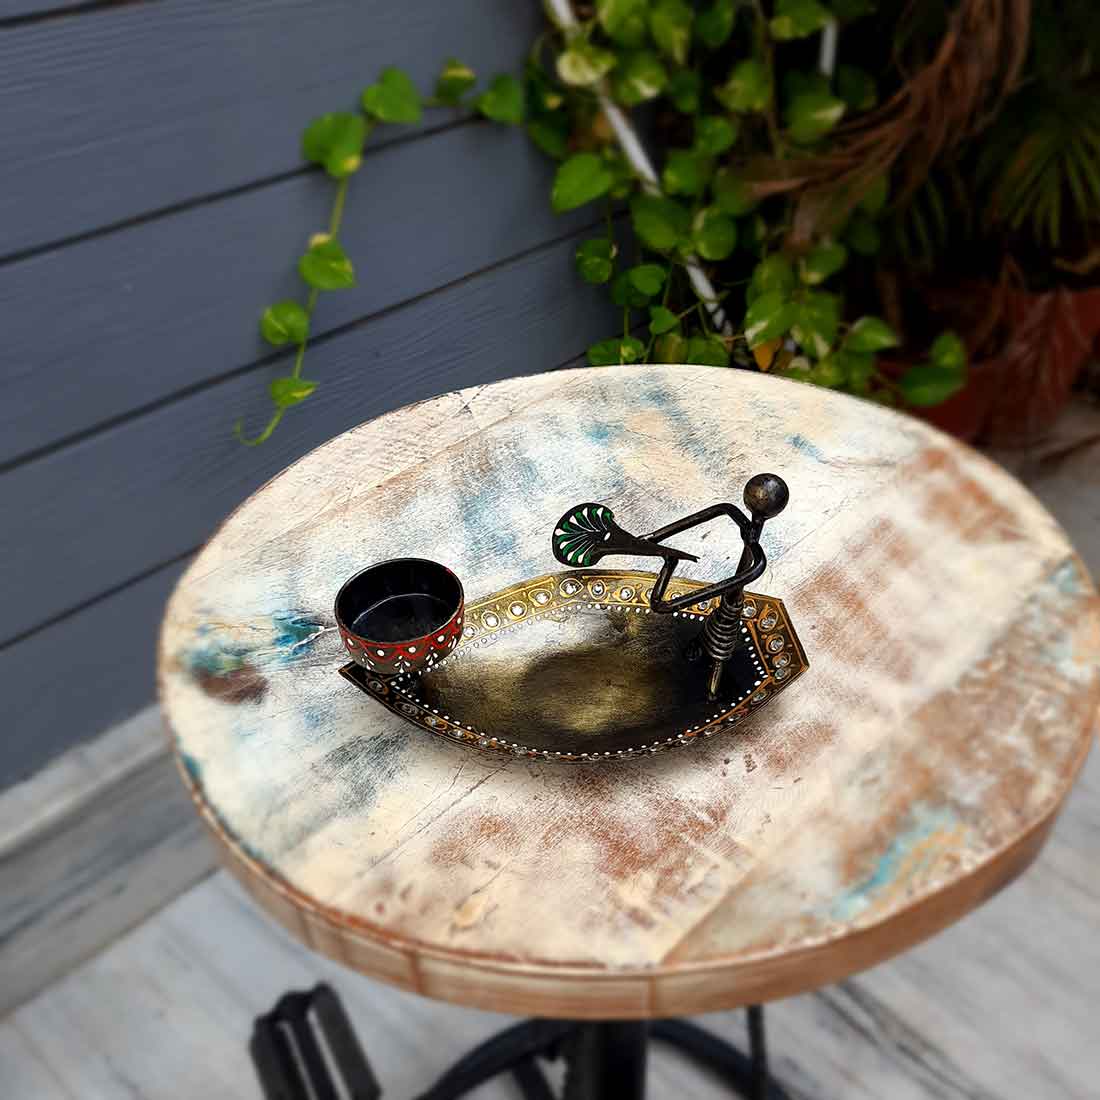 Tea Light Holder - Decorative Candle Holder Boat Design - For Home Decor & Gifts - 4 Inch - ApkaMart